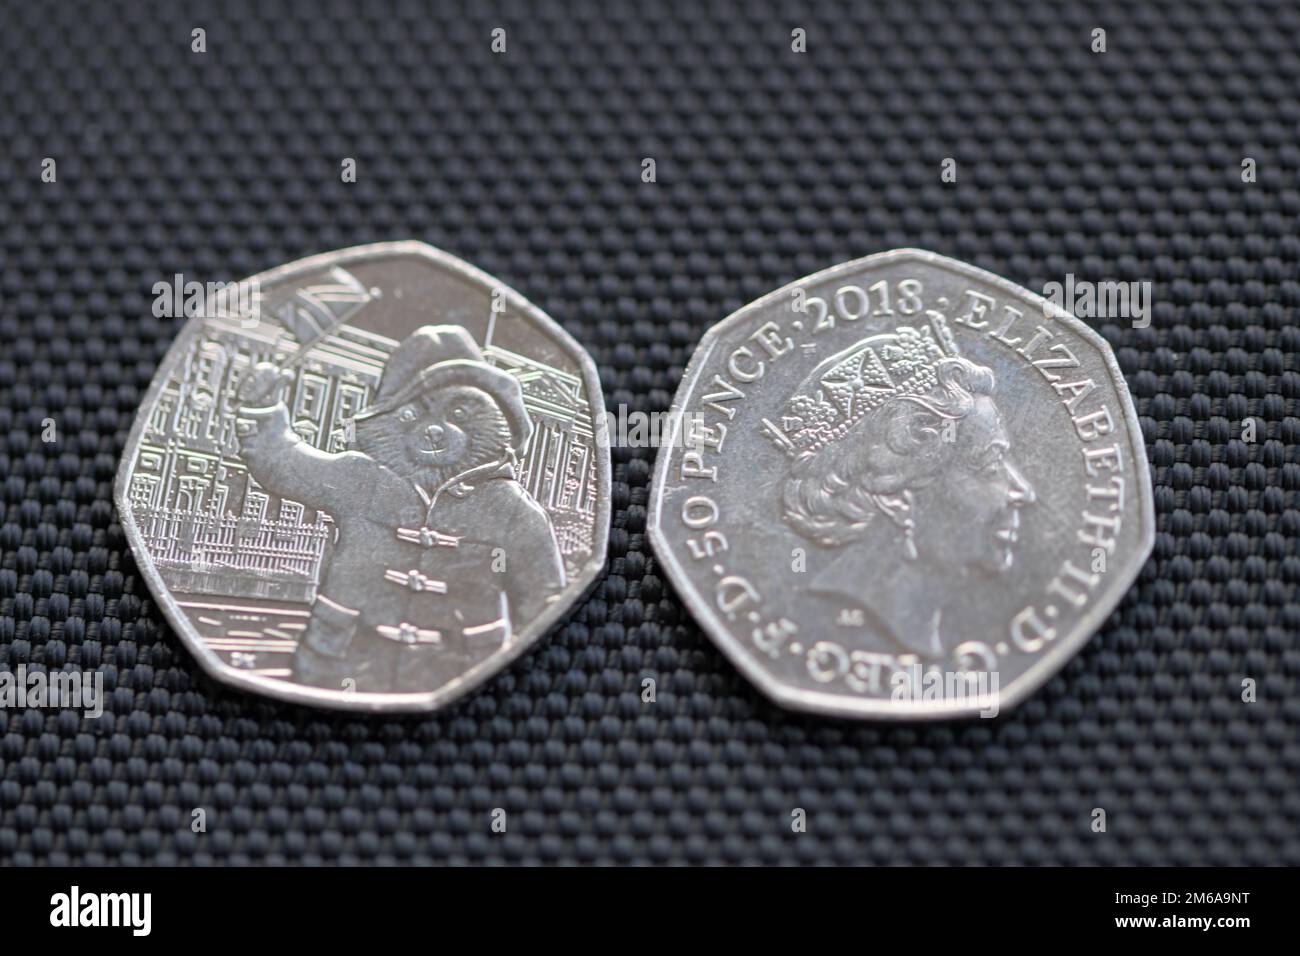 Deux pièces de 50p avec la reine Elizabeth II et l'ours Paddington qui agite un drapeau Banque D'Images